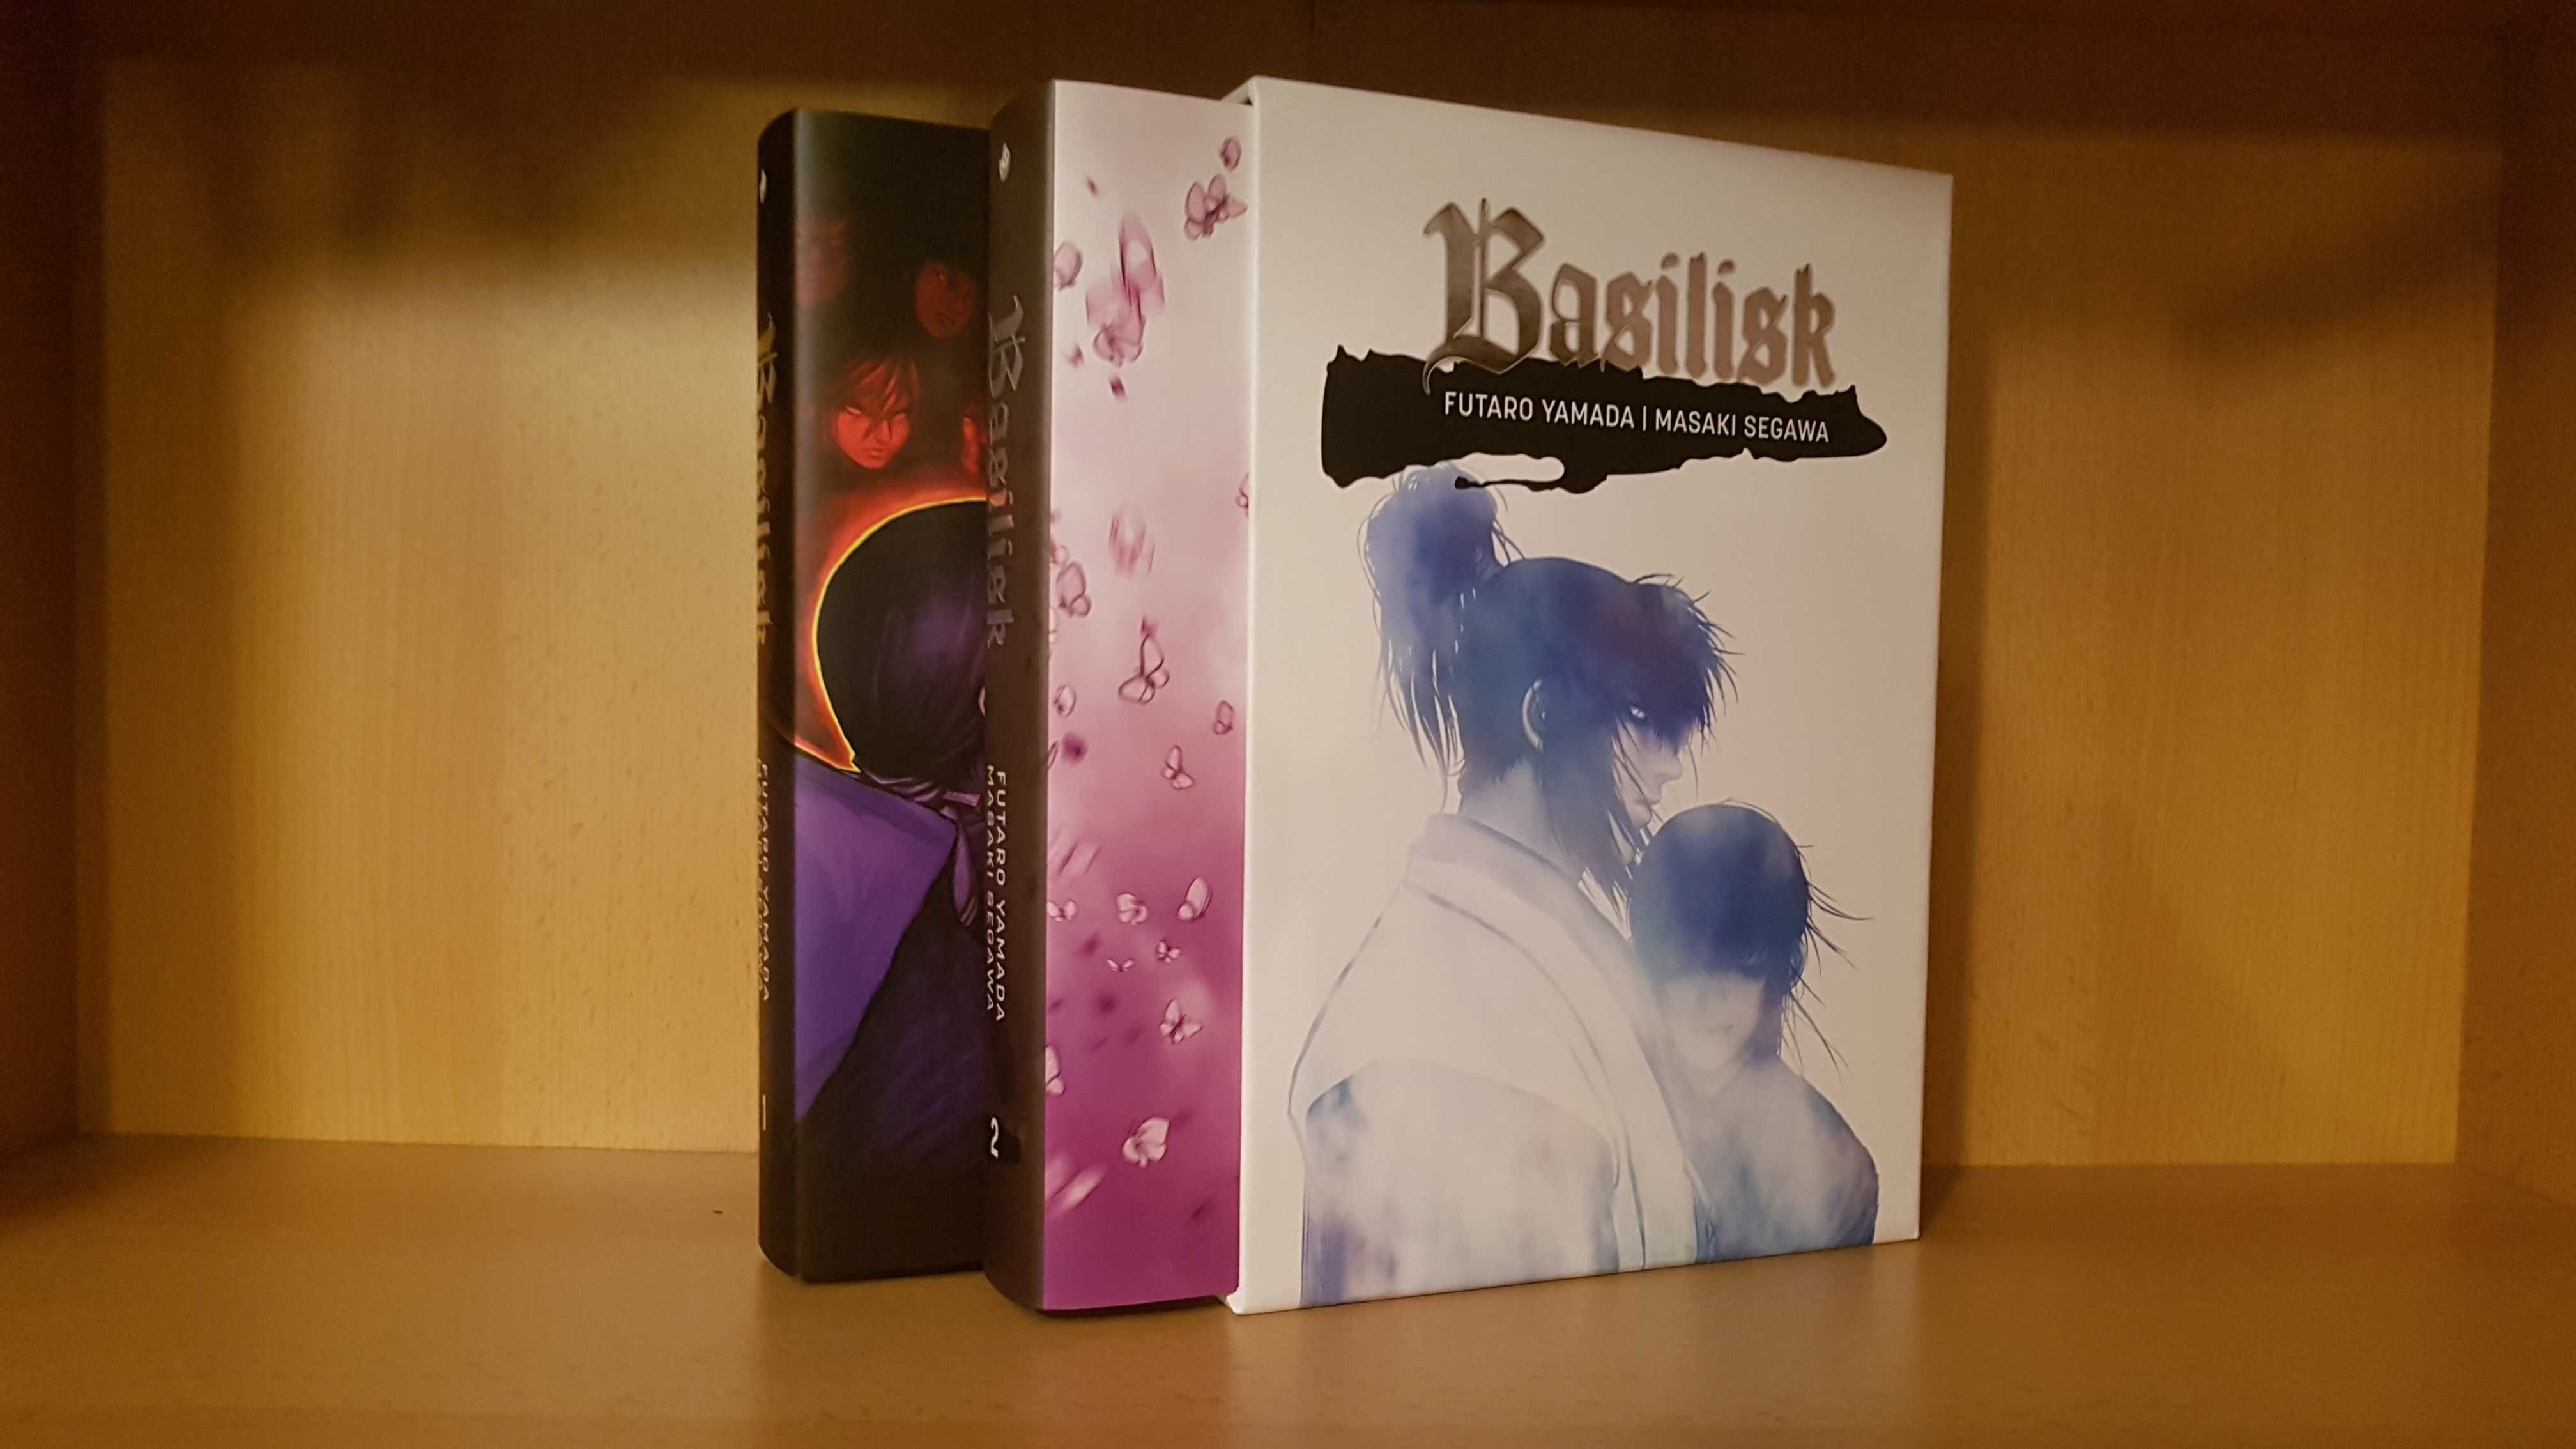 Manga Mangi Basilisk 01 - 02 Masaki Segawa, Futaro Yamada +DOST GRATIS